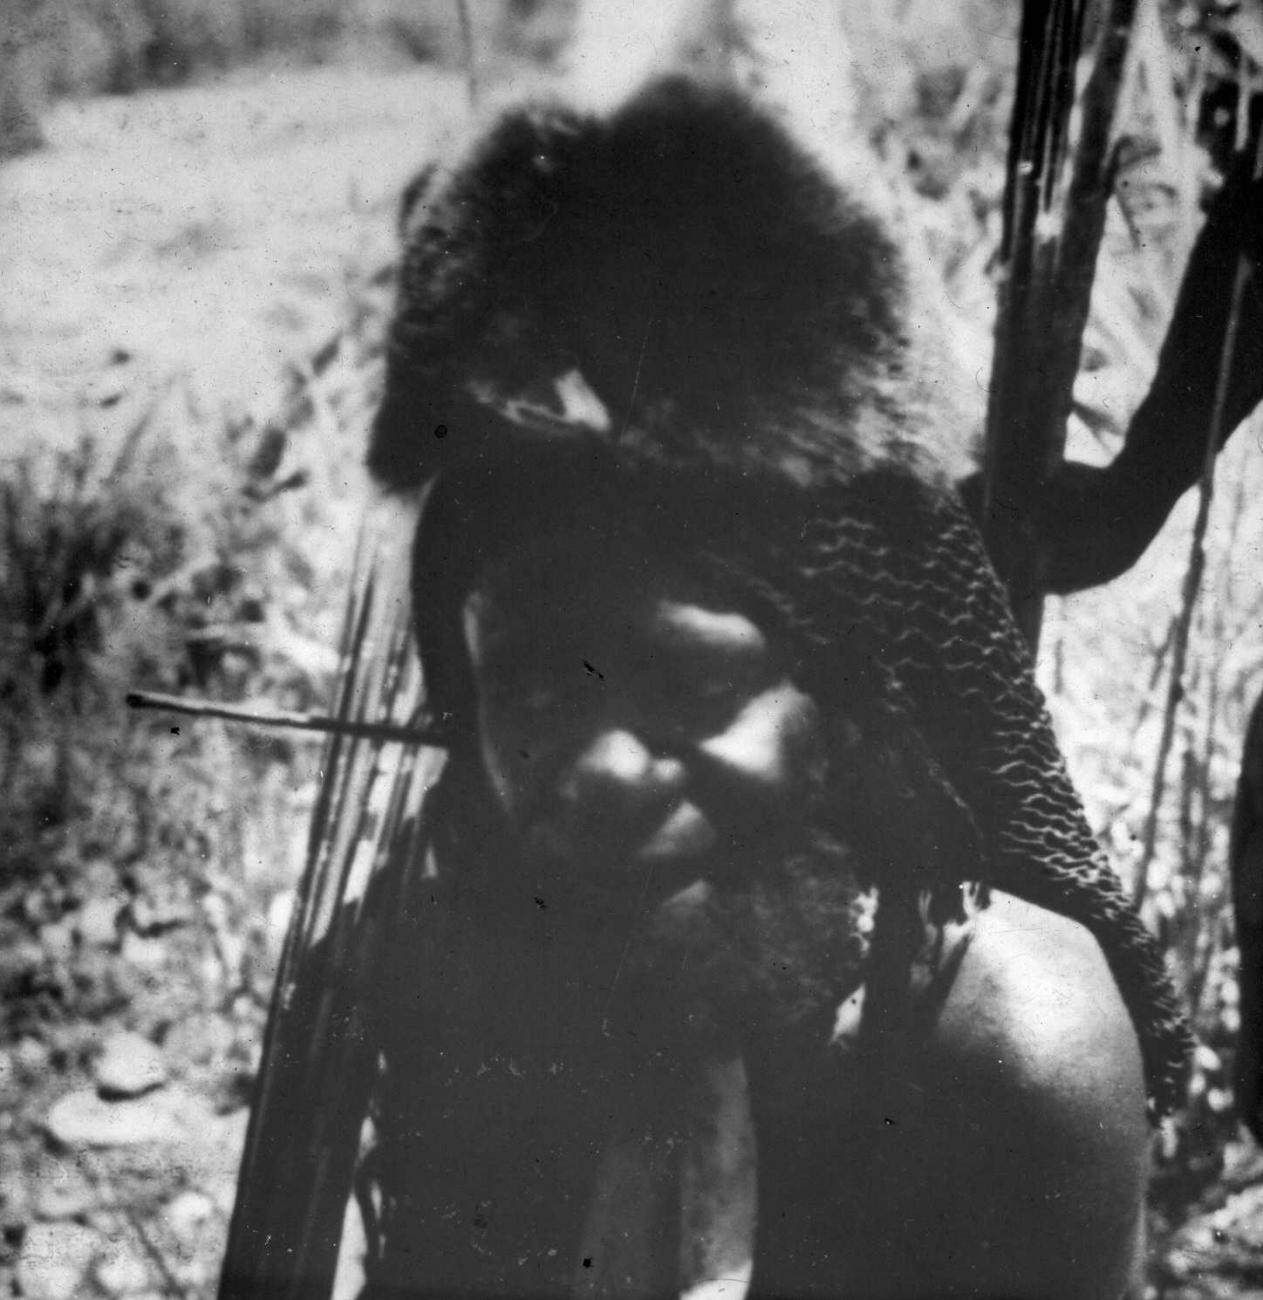 BD/66/461 - 
Portret van een Papoea-man met pijlenbundel en een hoofdtooi van koeskoesbont
